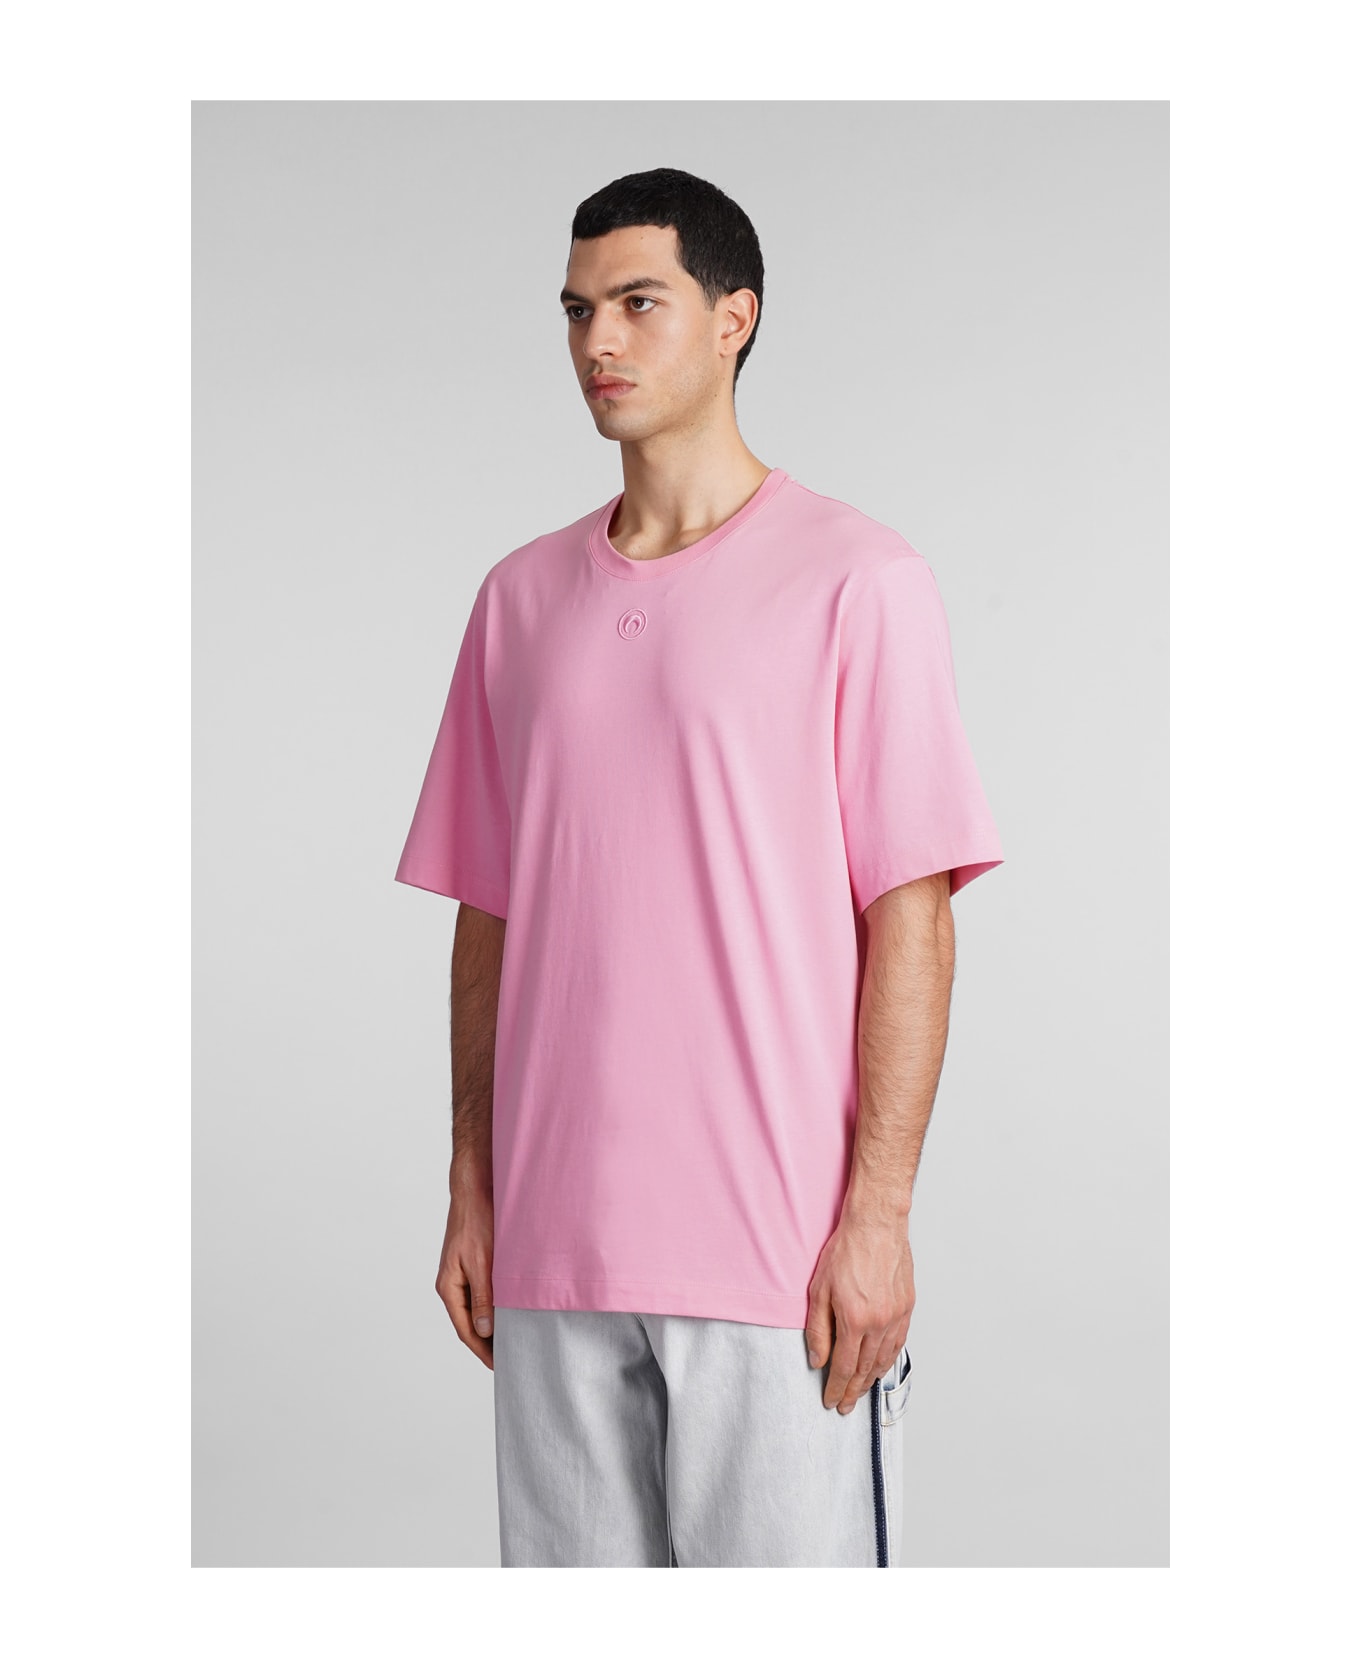 Marine Serre T-shirt In Rose-pink Cotton - rose-pink